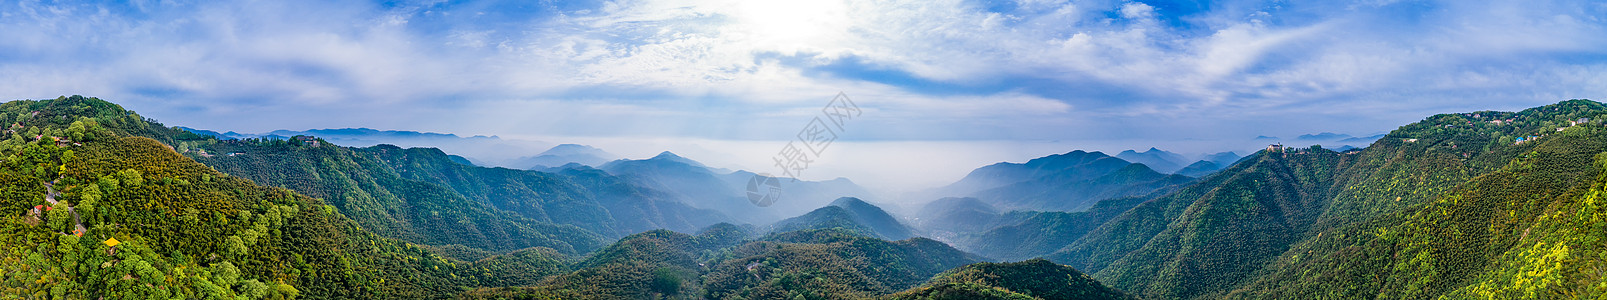 莫干山顶峰全景自然风景图片素材